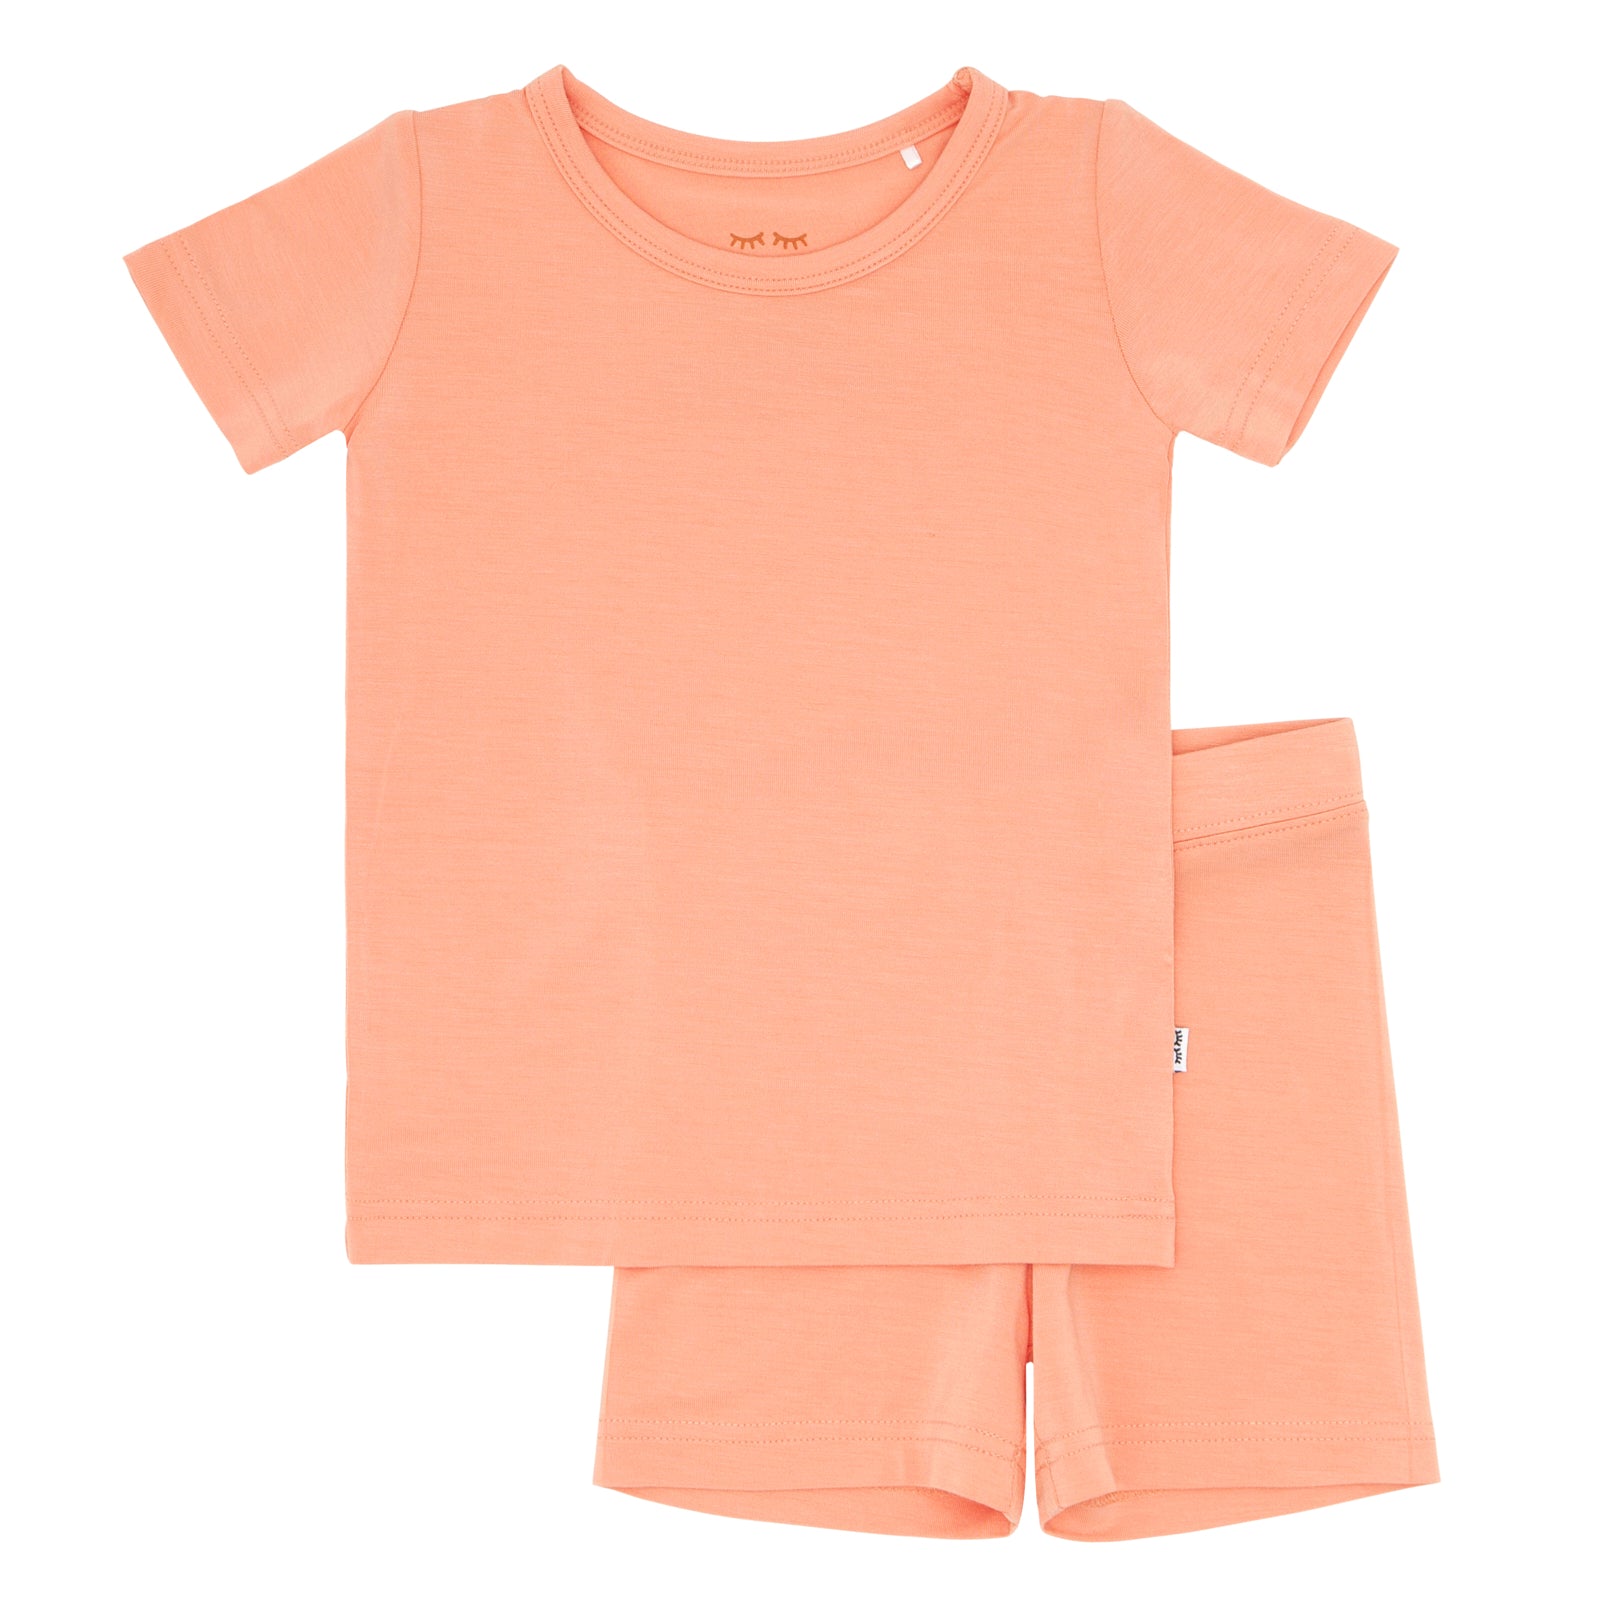 Flat lay image of a Peach short sleeve and shorts pajama set